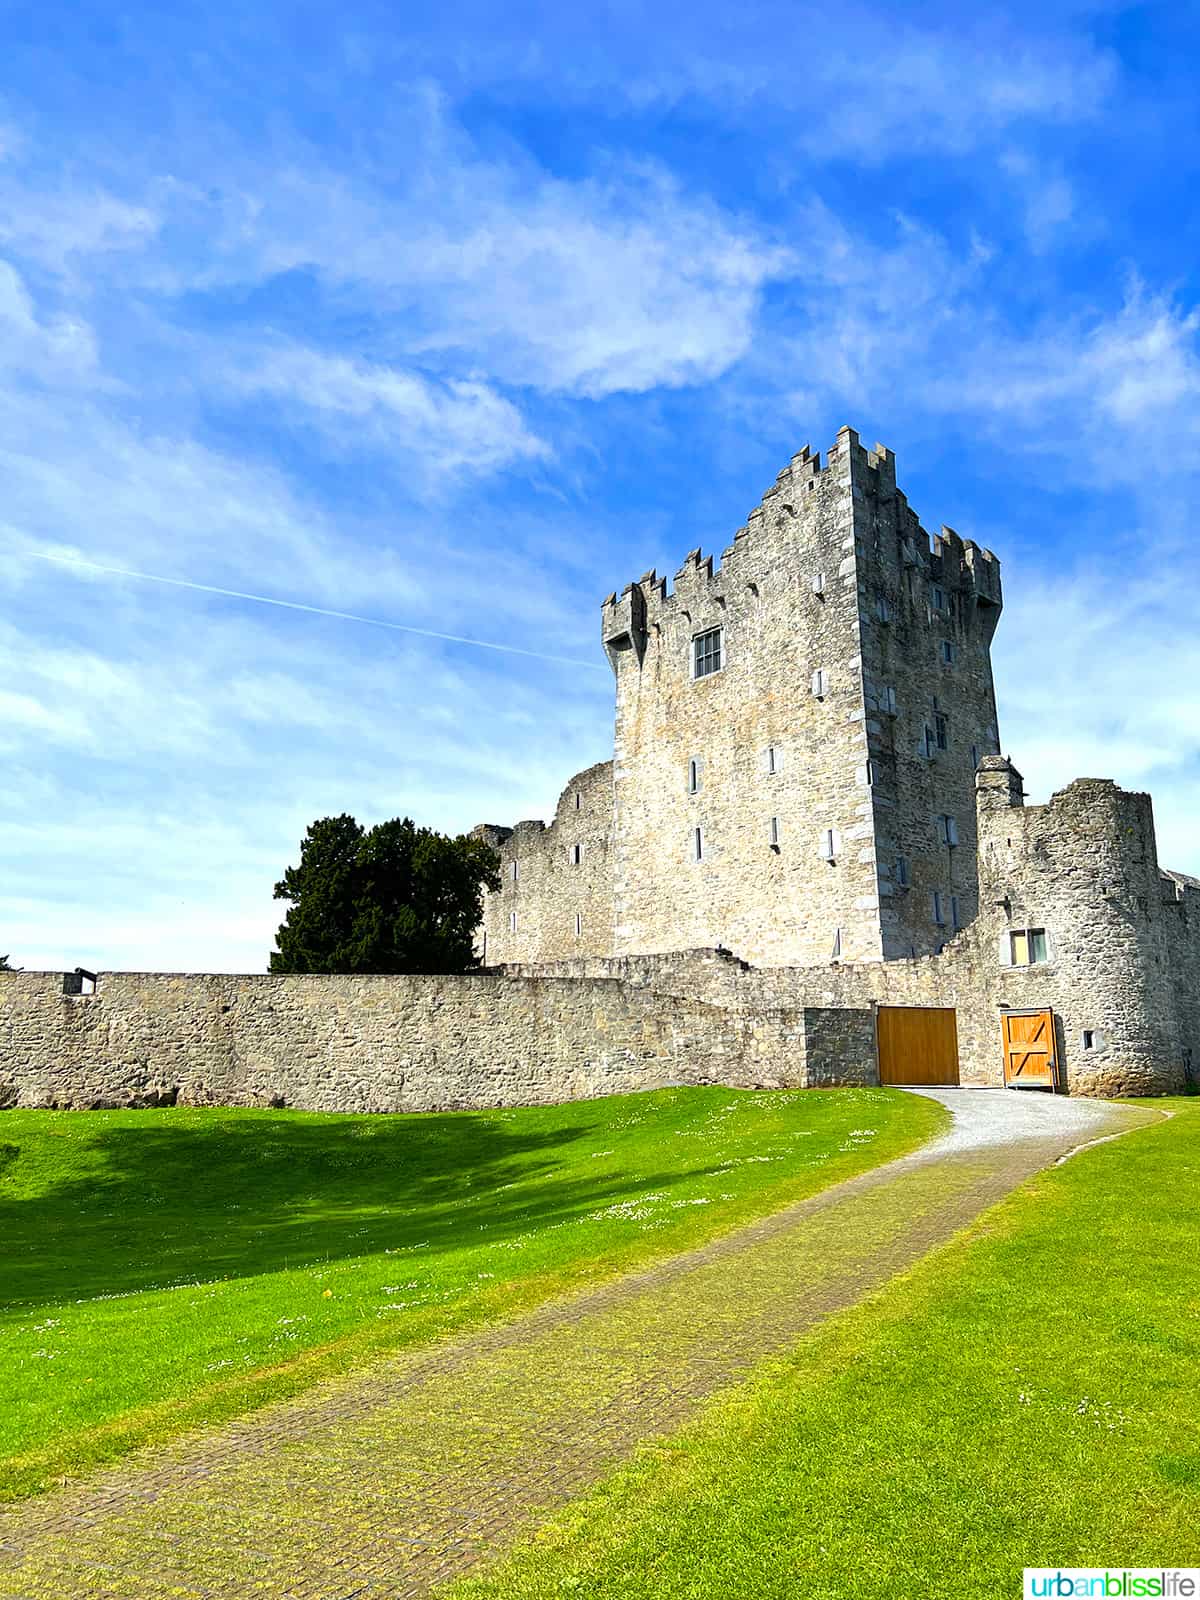 ross castle in killarney, ireland